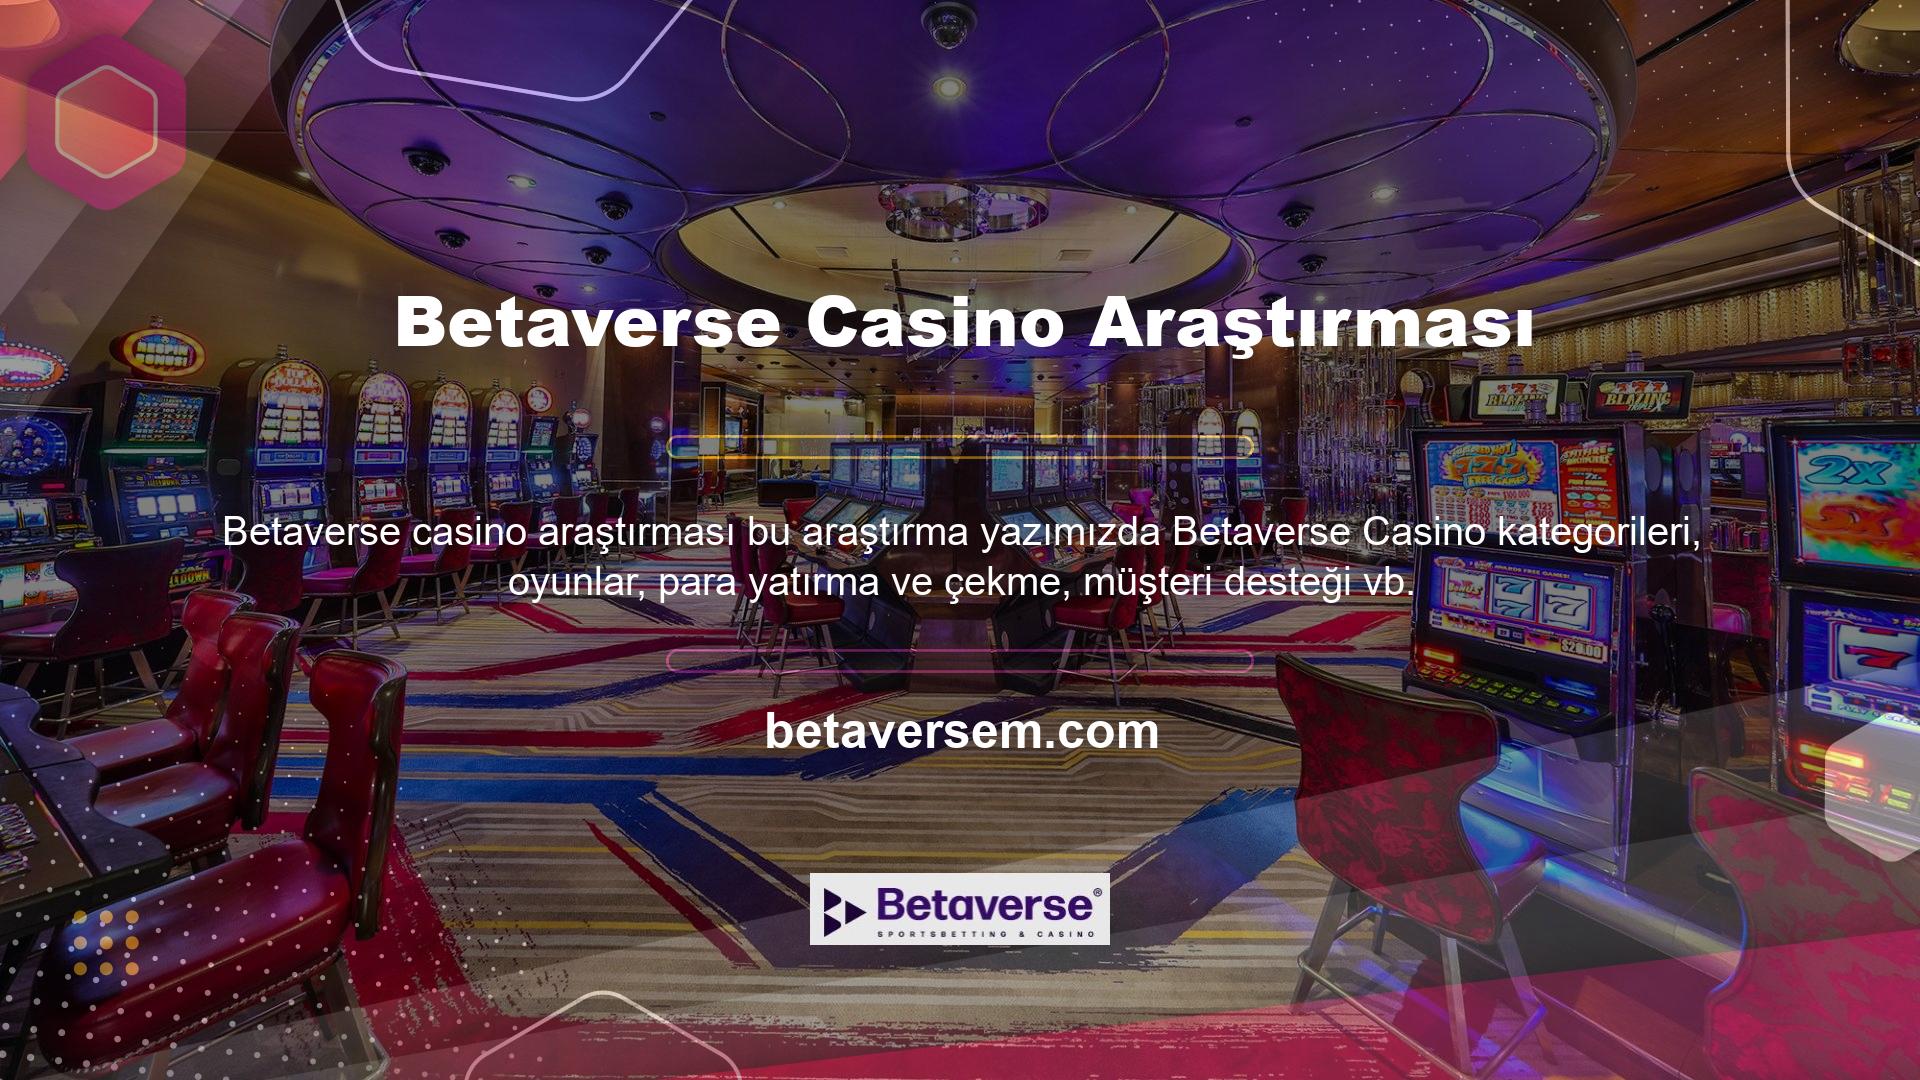 gibi Betaverse Casino ile ilgili tüm detayları paylaşacağız